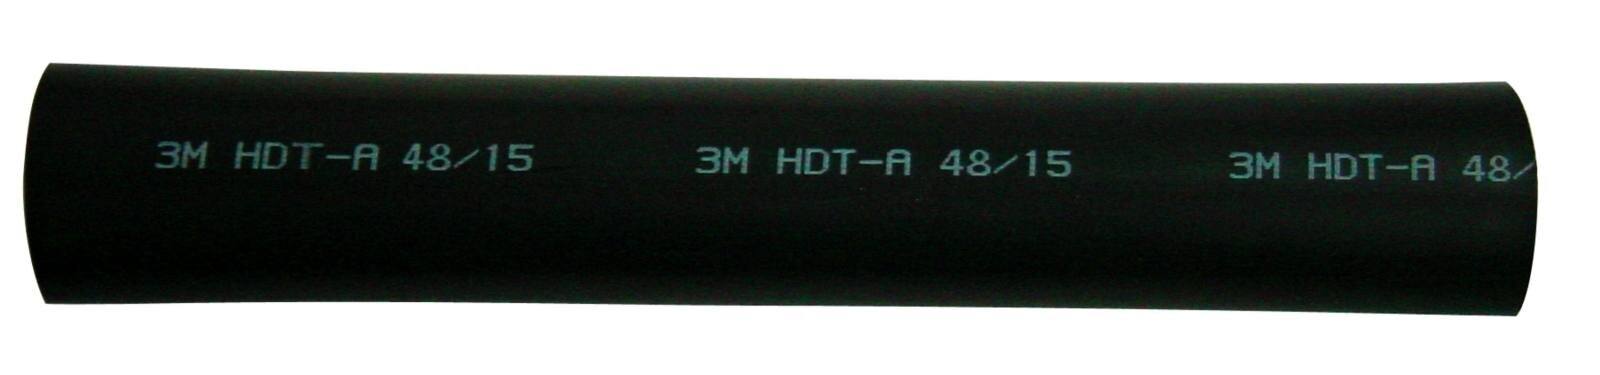 3M HDT-A Tubo termorretráctil de pared gruesa con adhesivo, negro, 30/8 mm, 1 m